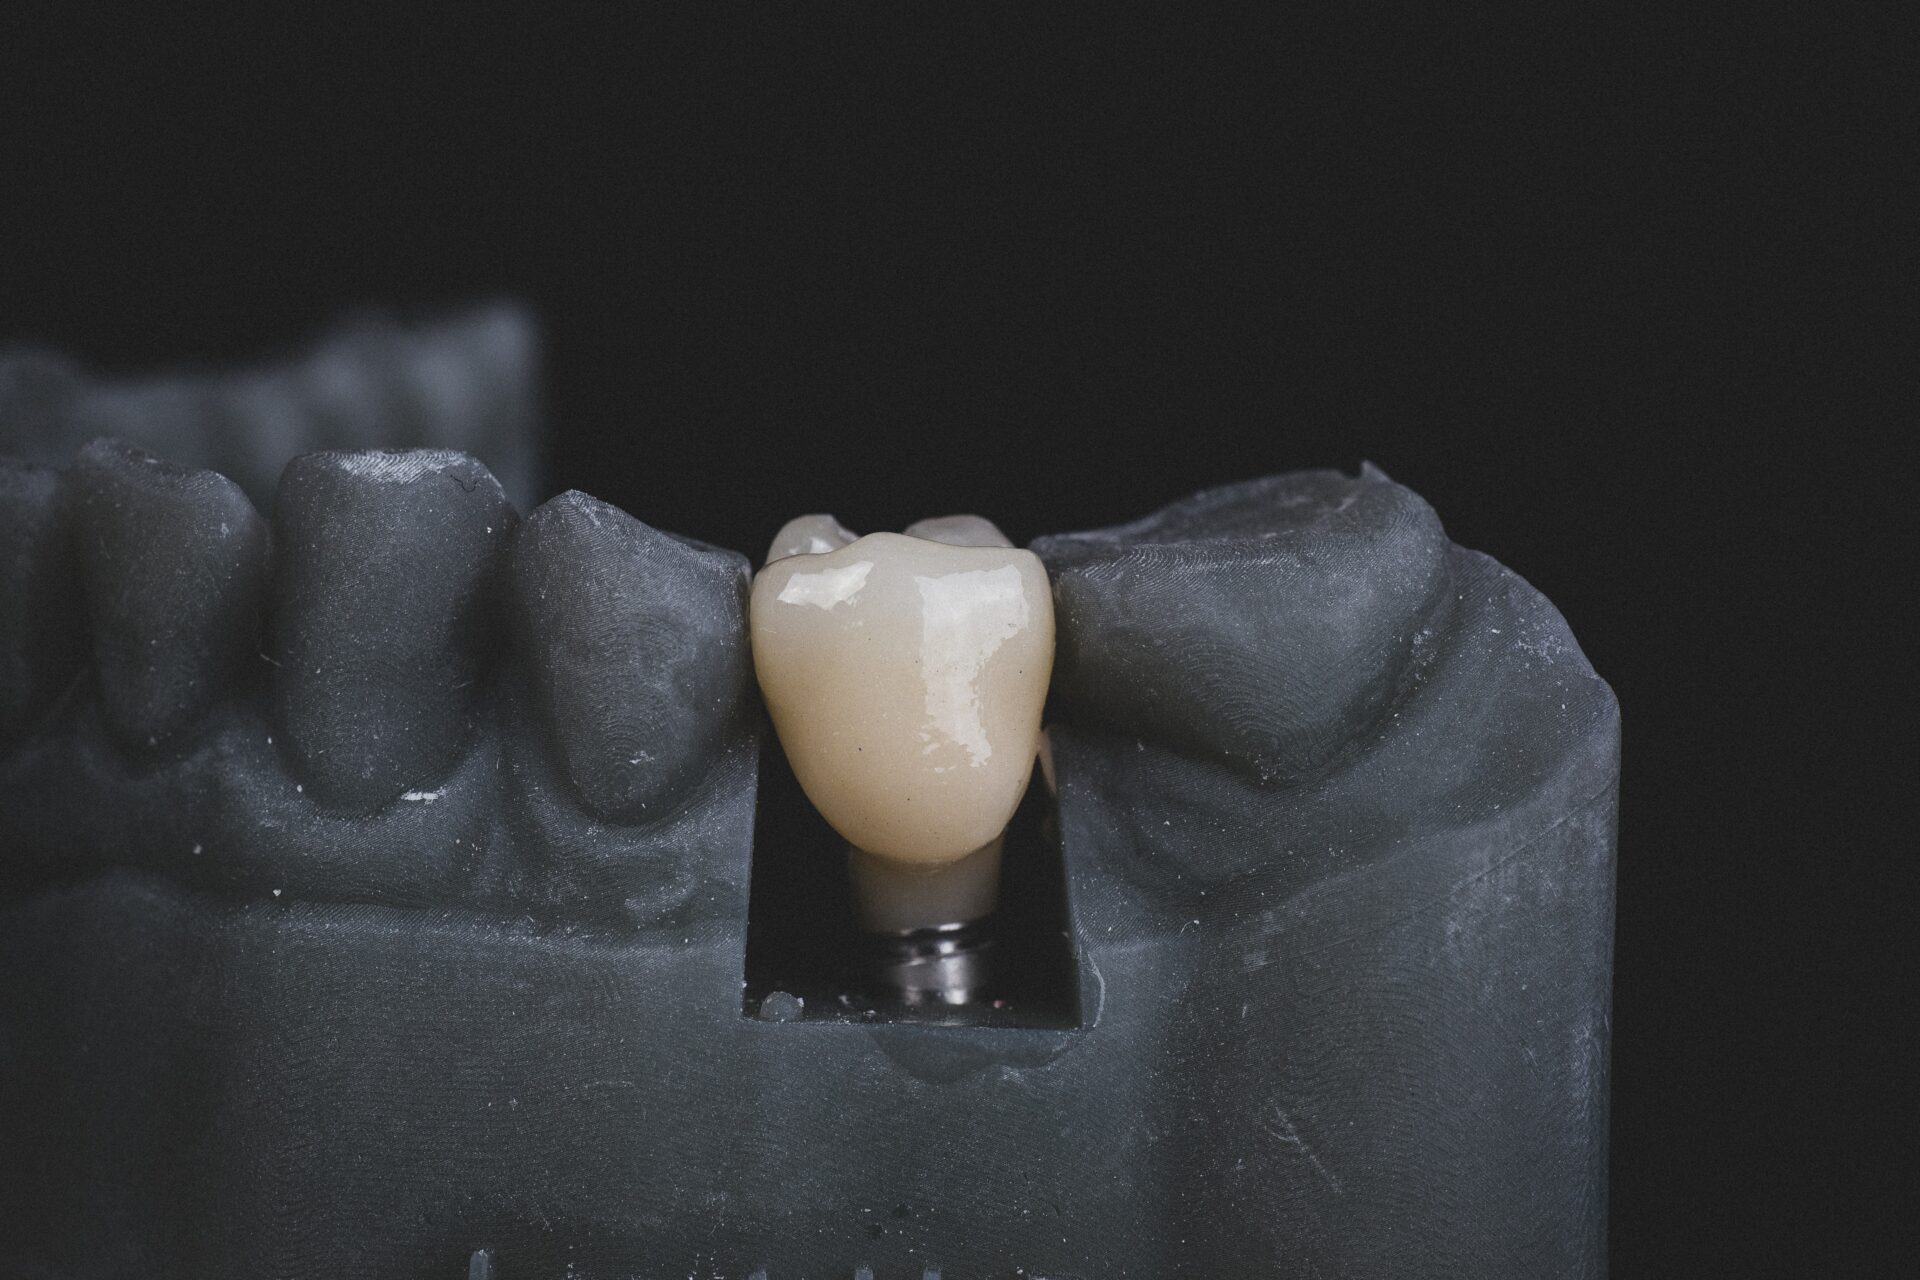 Zahnimplantate sind modernster Zahnersatz, aber auch entsprechend kostspielig. Bildquelle: © Jonathan Borba / Unsplash.com